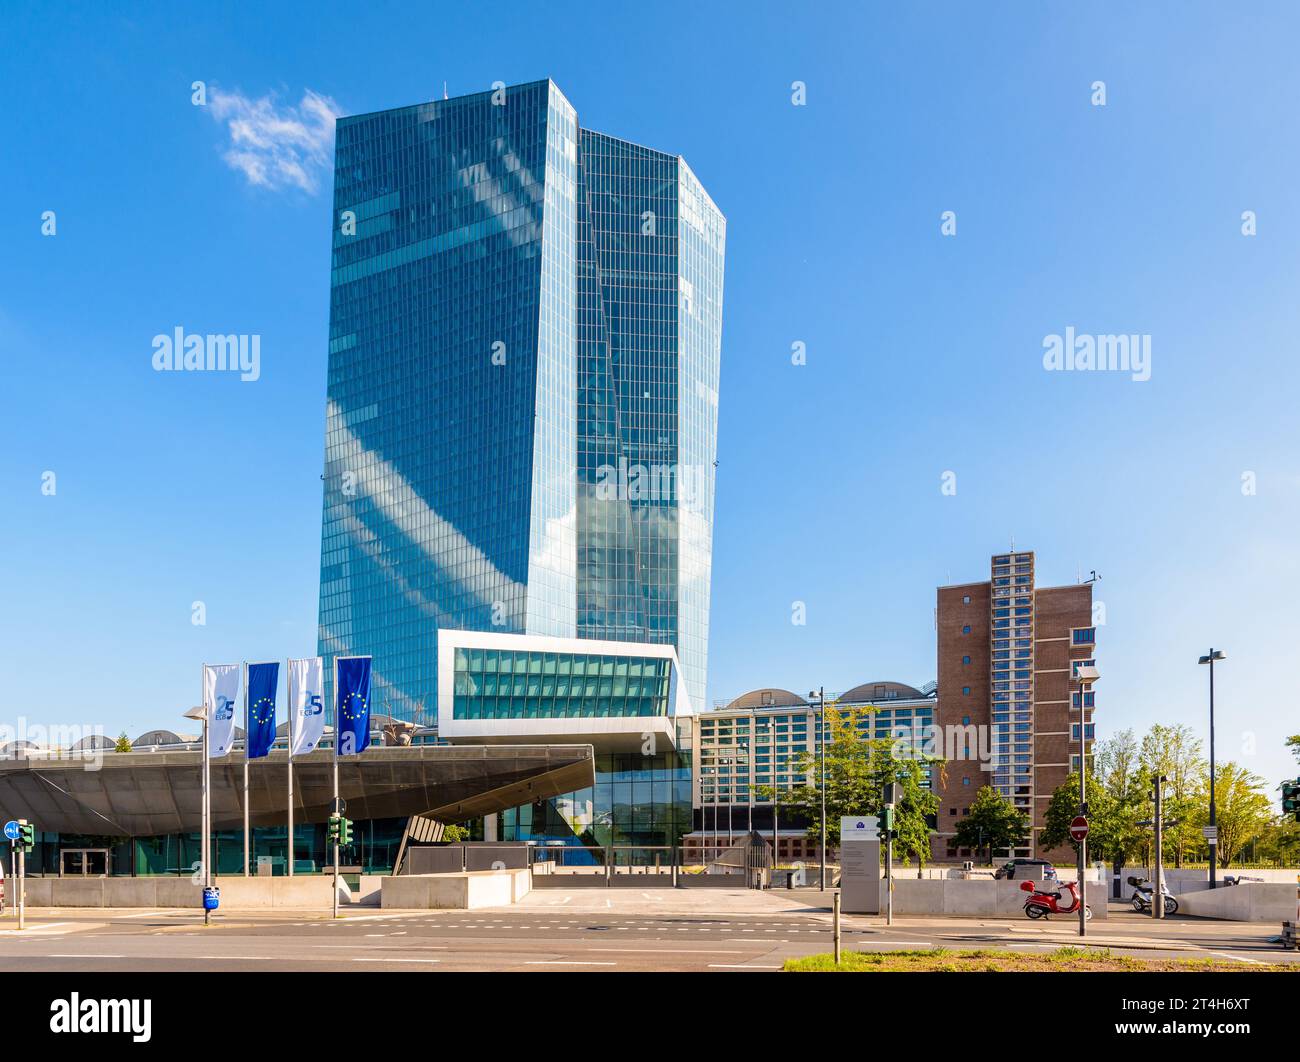 Siège de la Banque centrale européenne (BCE) à Francfort, Allemagne, comprenant le bâtiment Skytower et l'ancien Wholesale Market Hall rénové. Banque D'Images